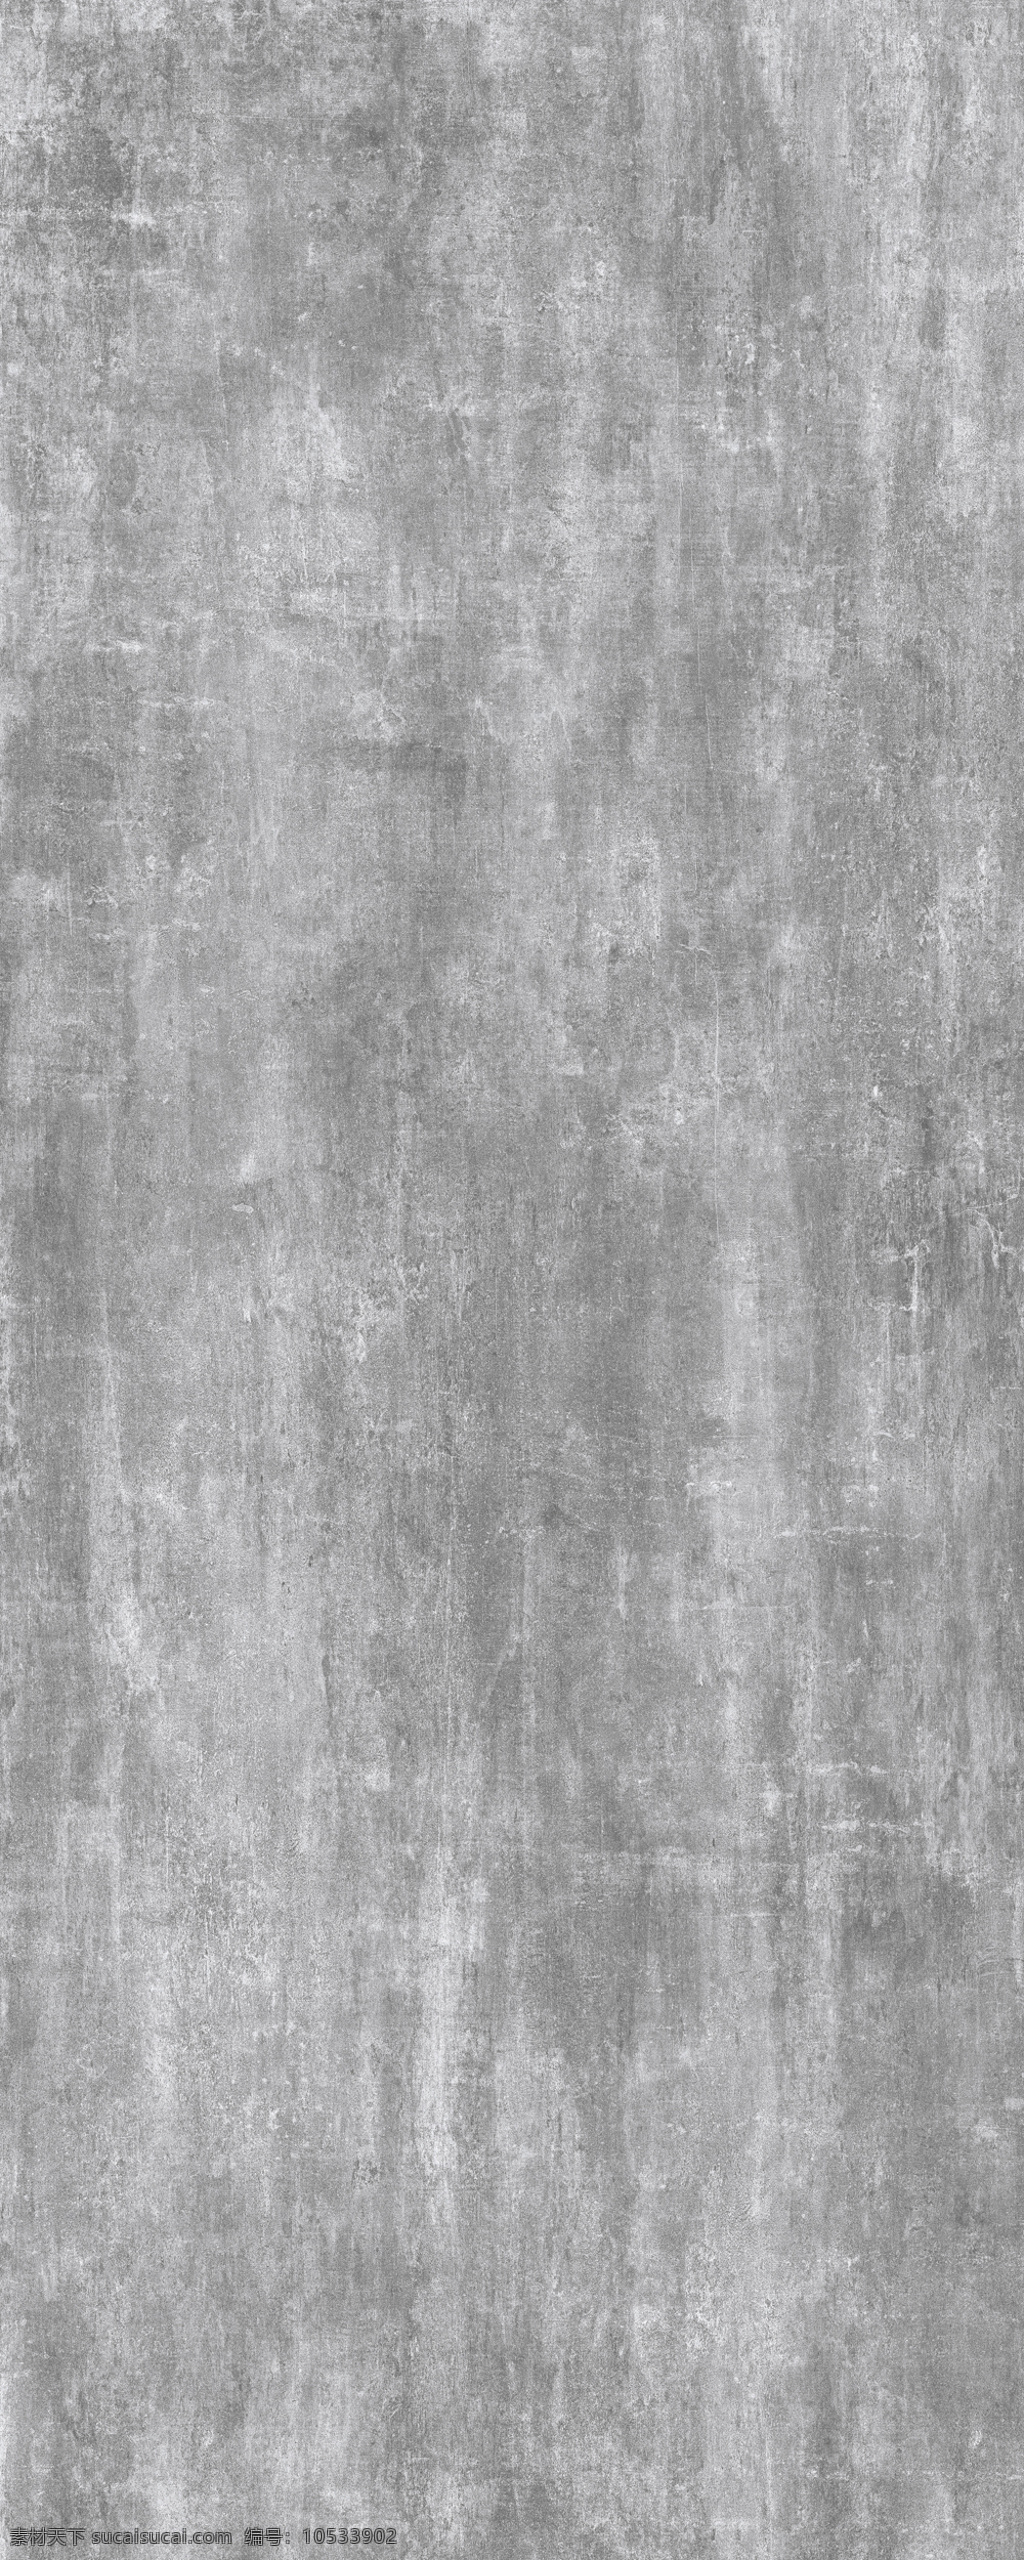 水泥灰图片 水泥灰 岩板 岩板大板 陶瓷大板 岩板平面图 岩板背景